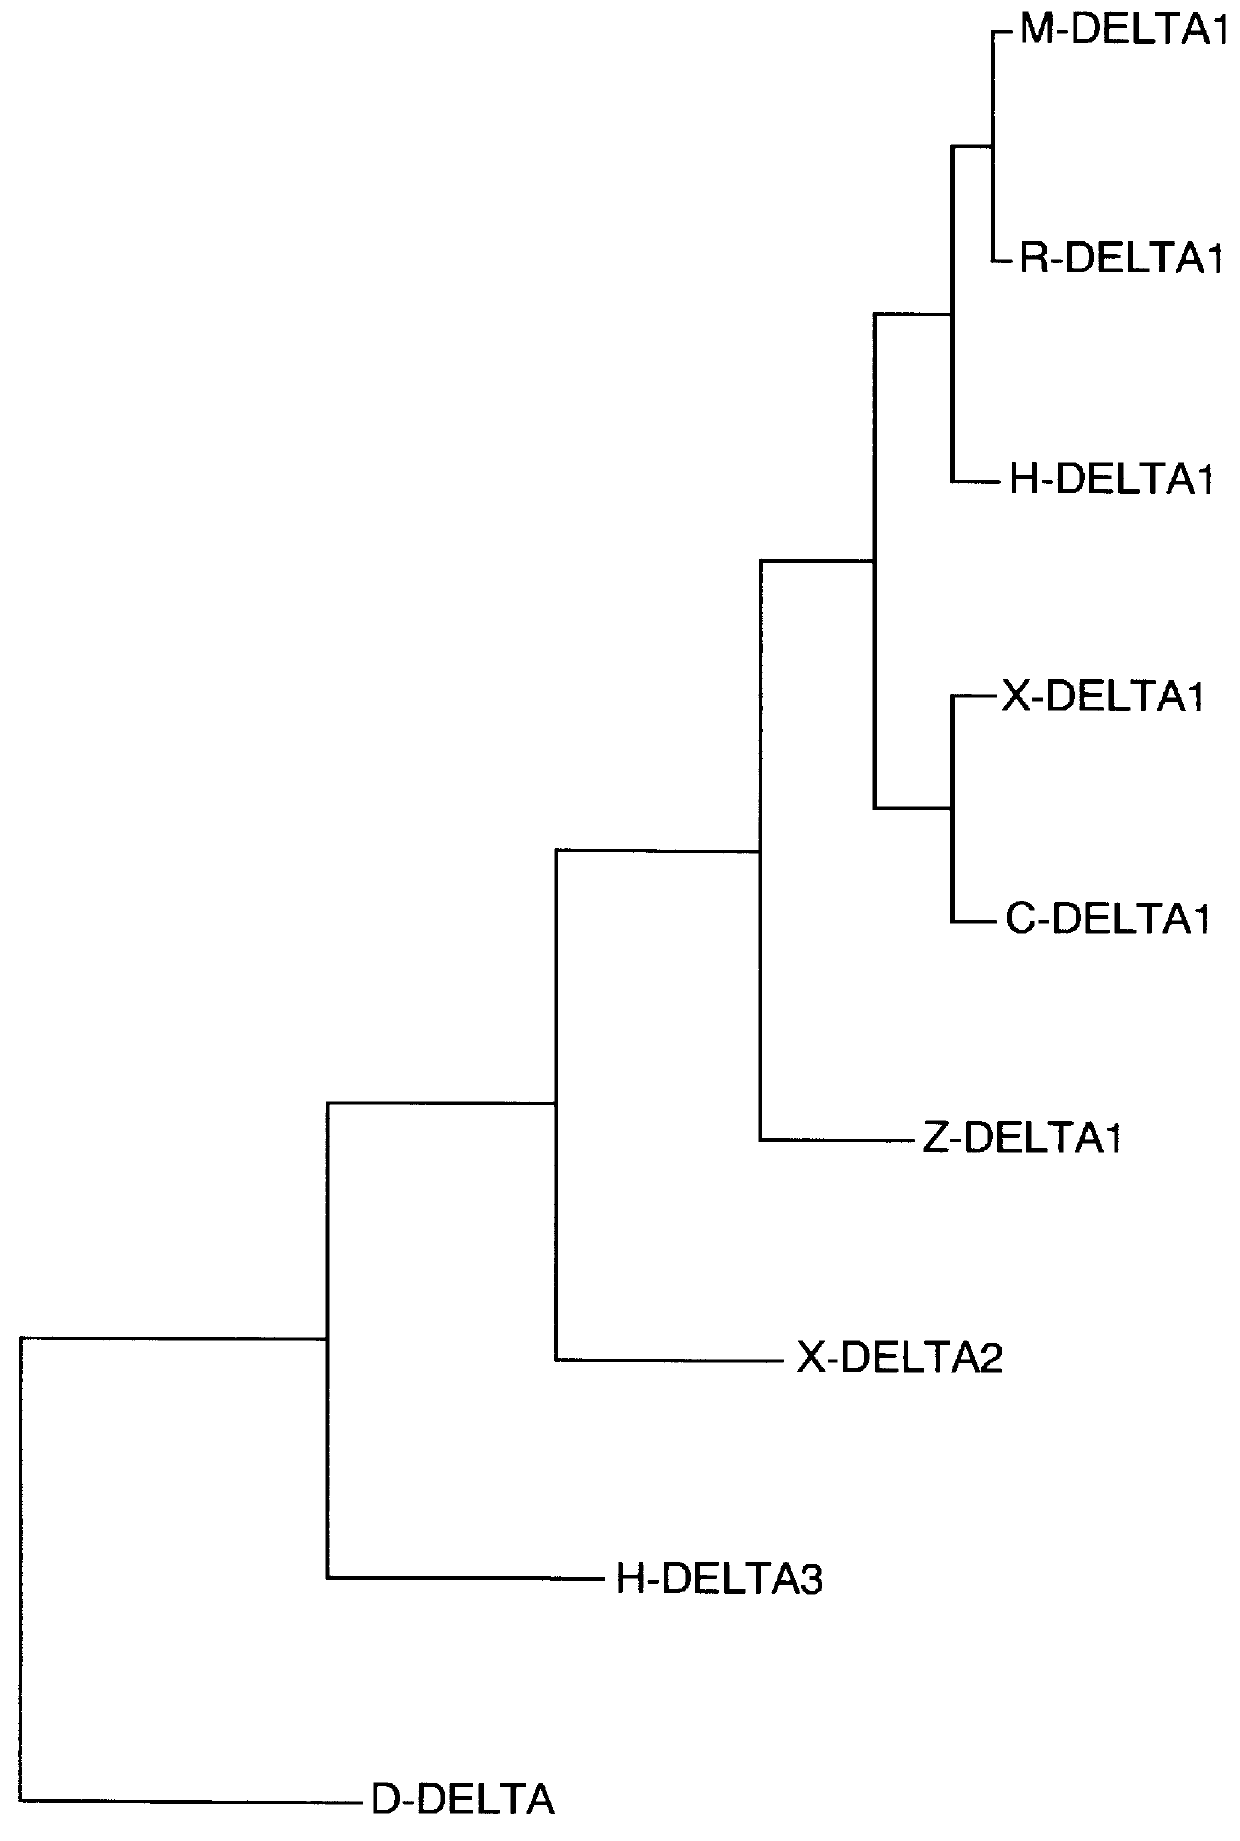 Human Delta3 nucleic acid molecules